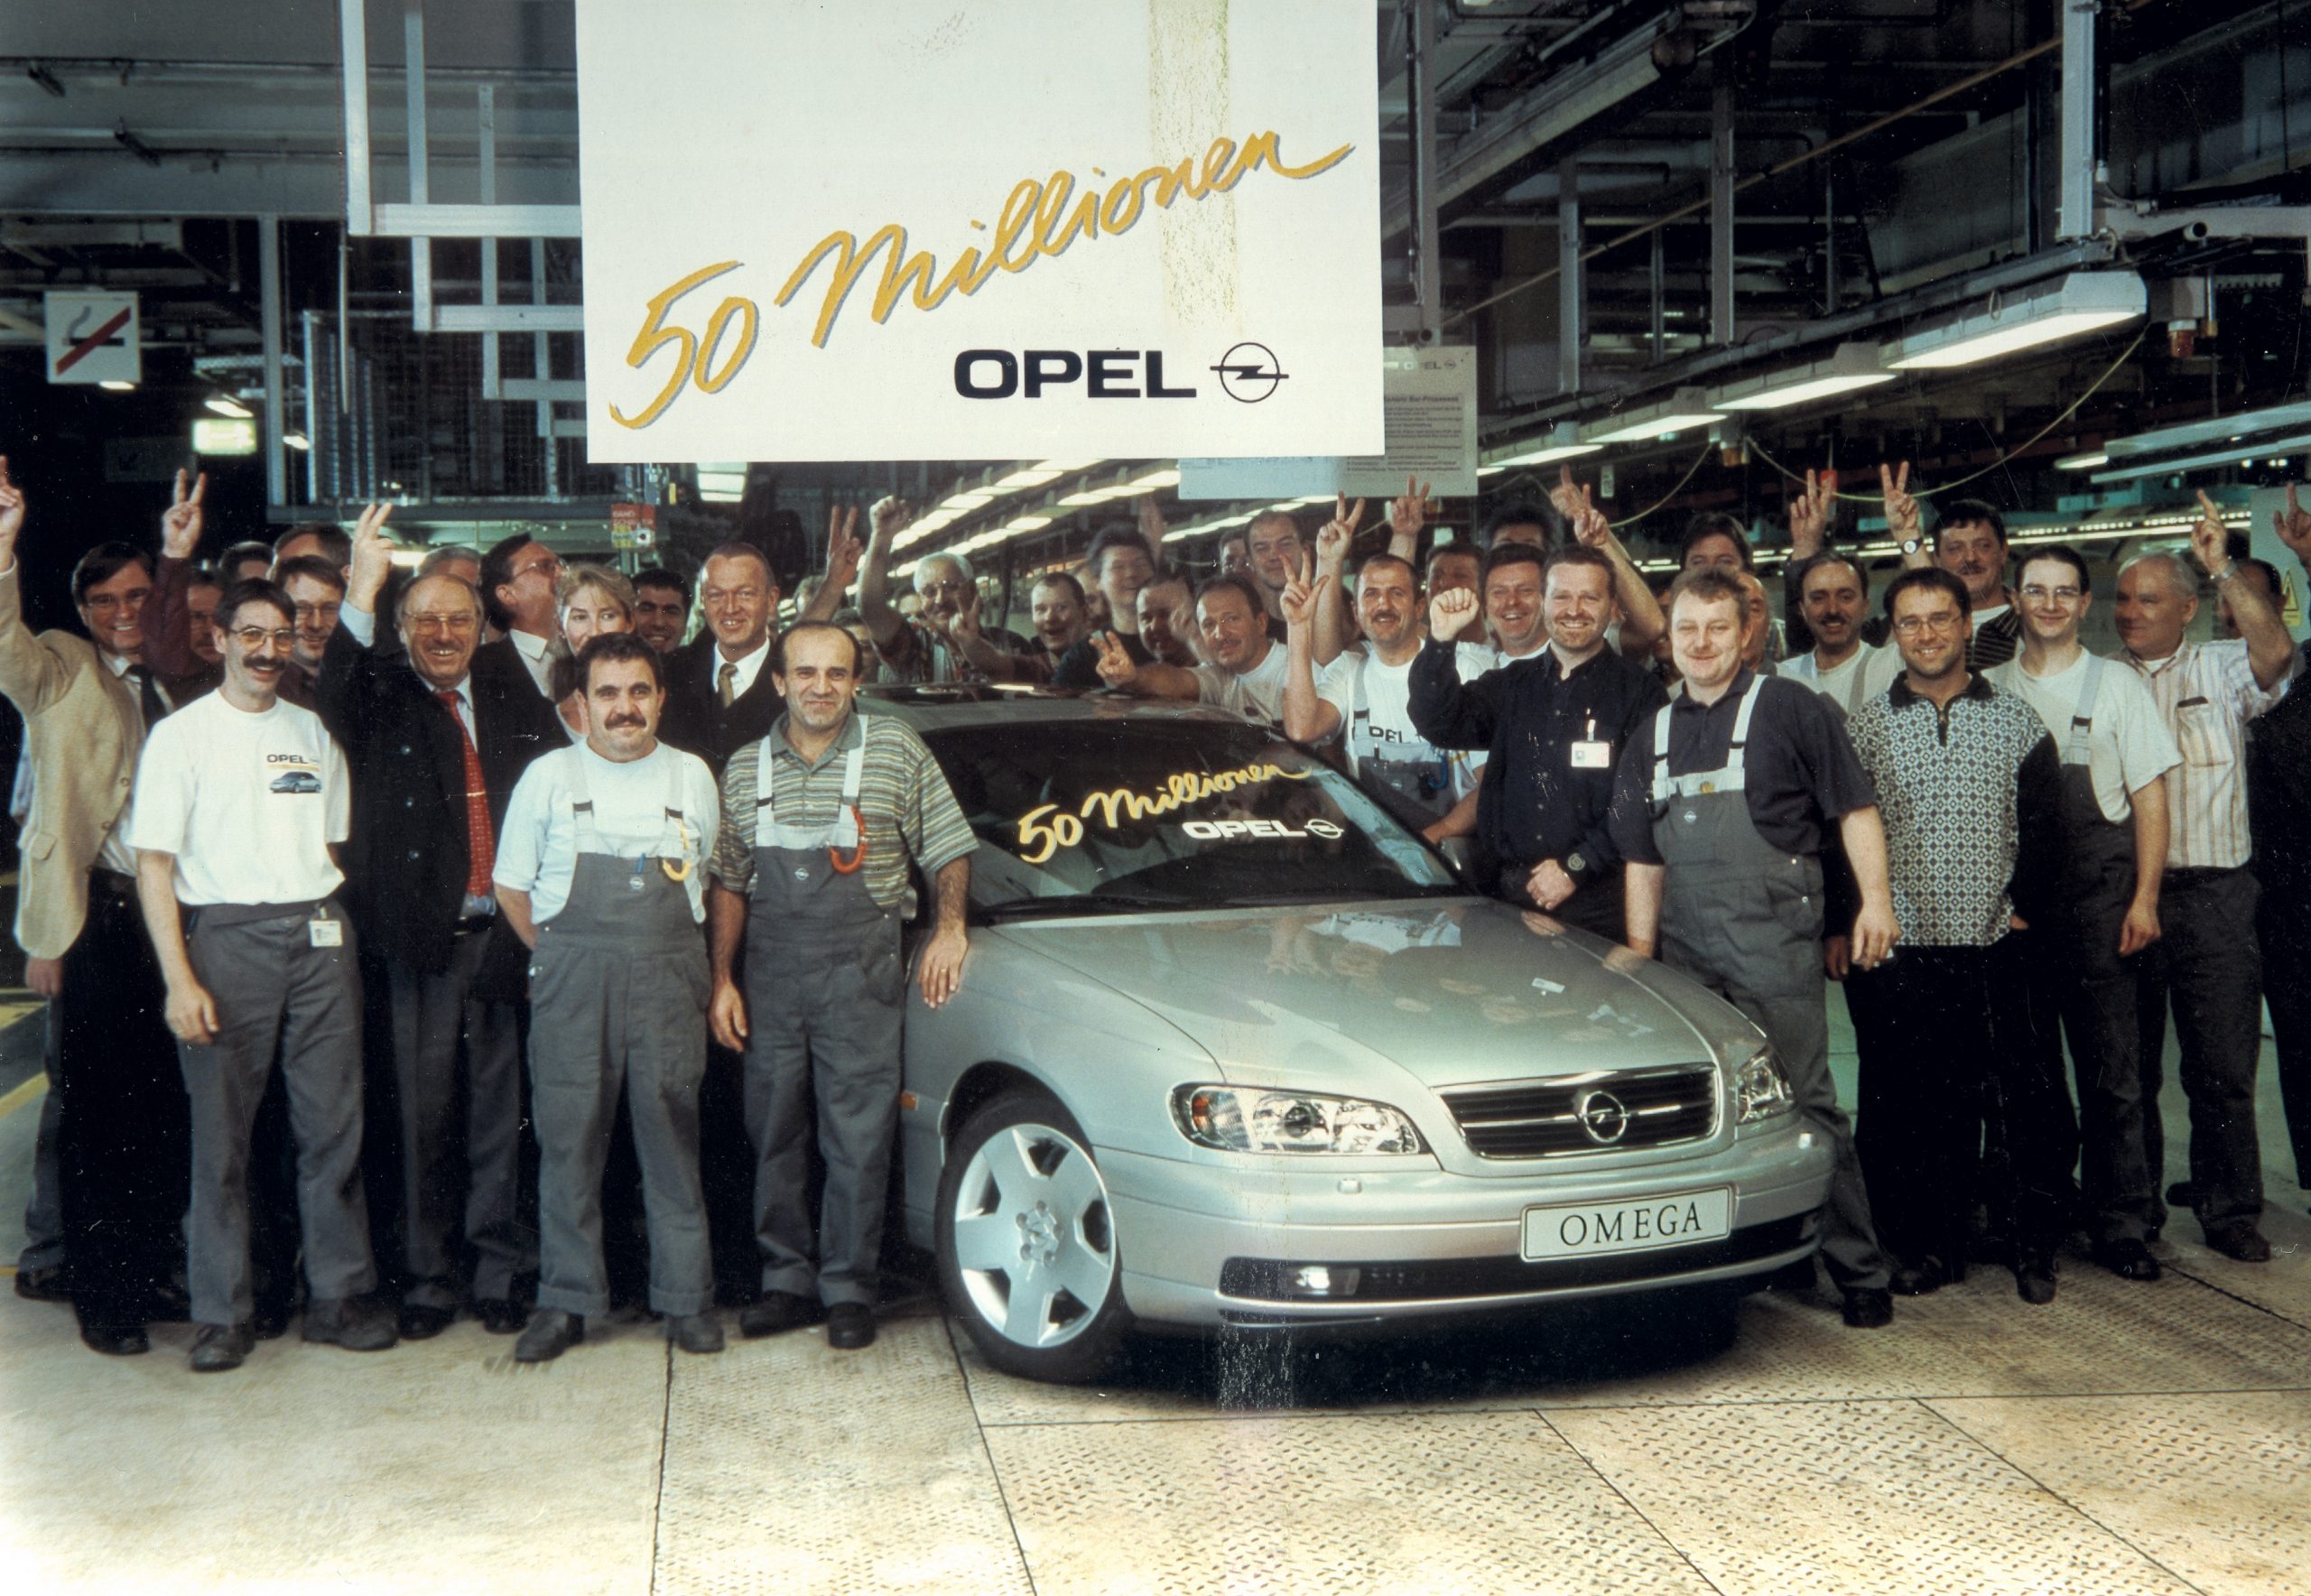 Inverno in sicurezza: al via il cambio gomme! - image 1999-50-milioni-Opel-scaled on https://motori.net